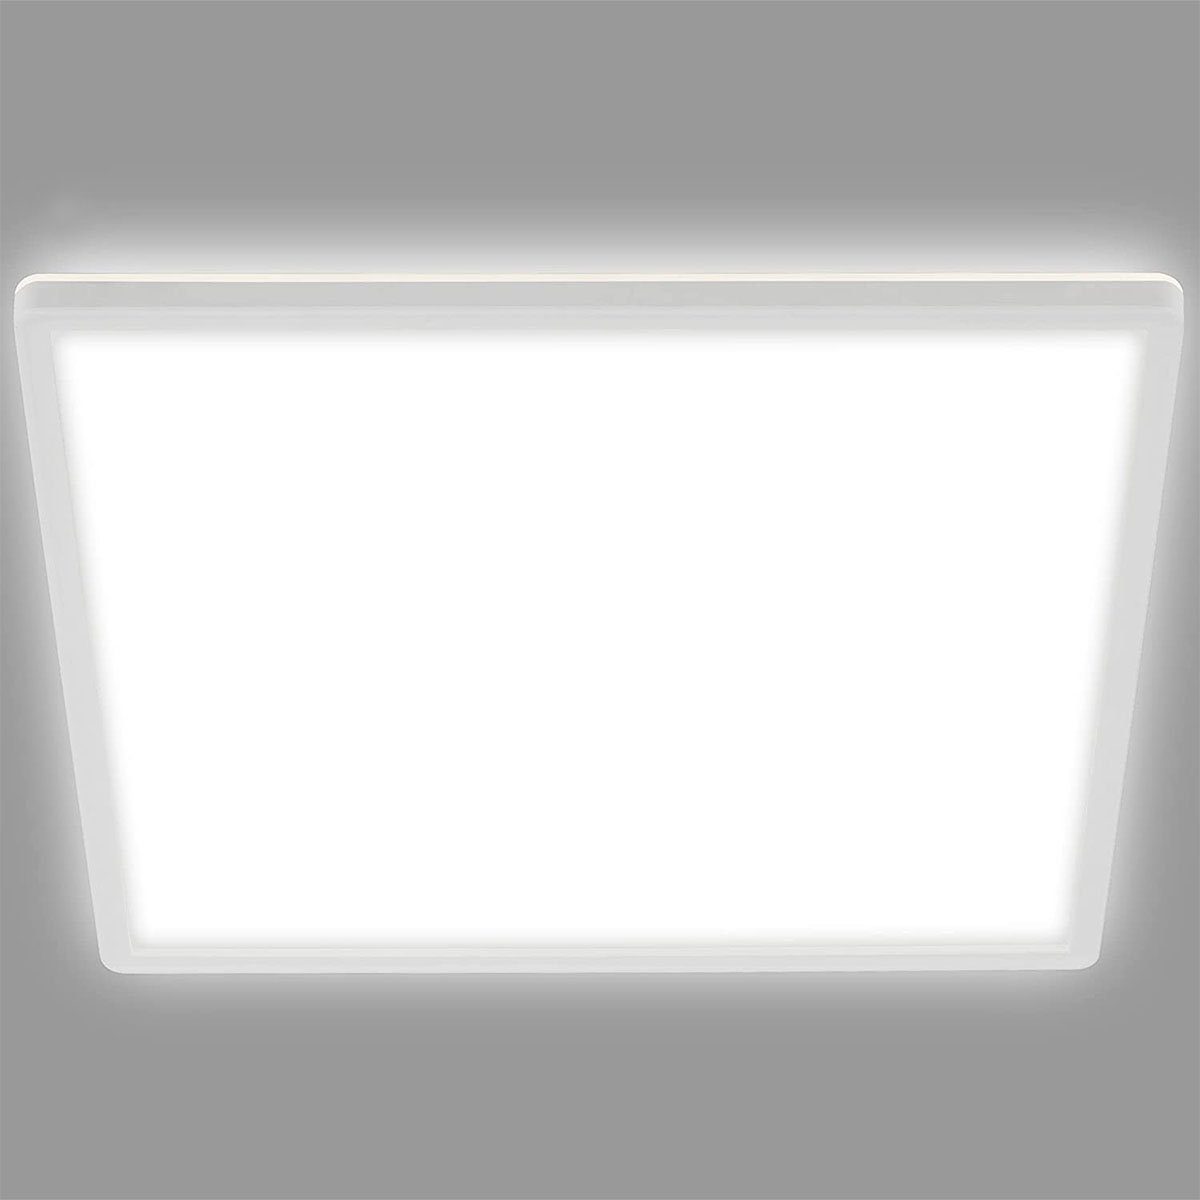 oyajia Deckenleuchte Ultraslim LED Panel Deckenleuchte, 24W LED Deckenlampe, 2400 Lumen, LED fest integriert, Kaltweiß/Naturweiß/Warmweiß, 30cm x 2.5cm, für Schlafzimmer, Badezimmer, Balkon, Flur, Küche Quadrat /Kaltweiß